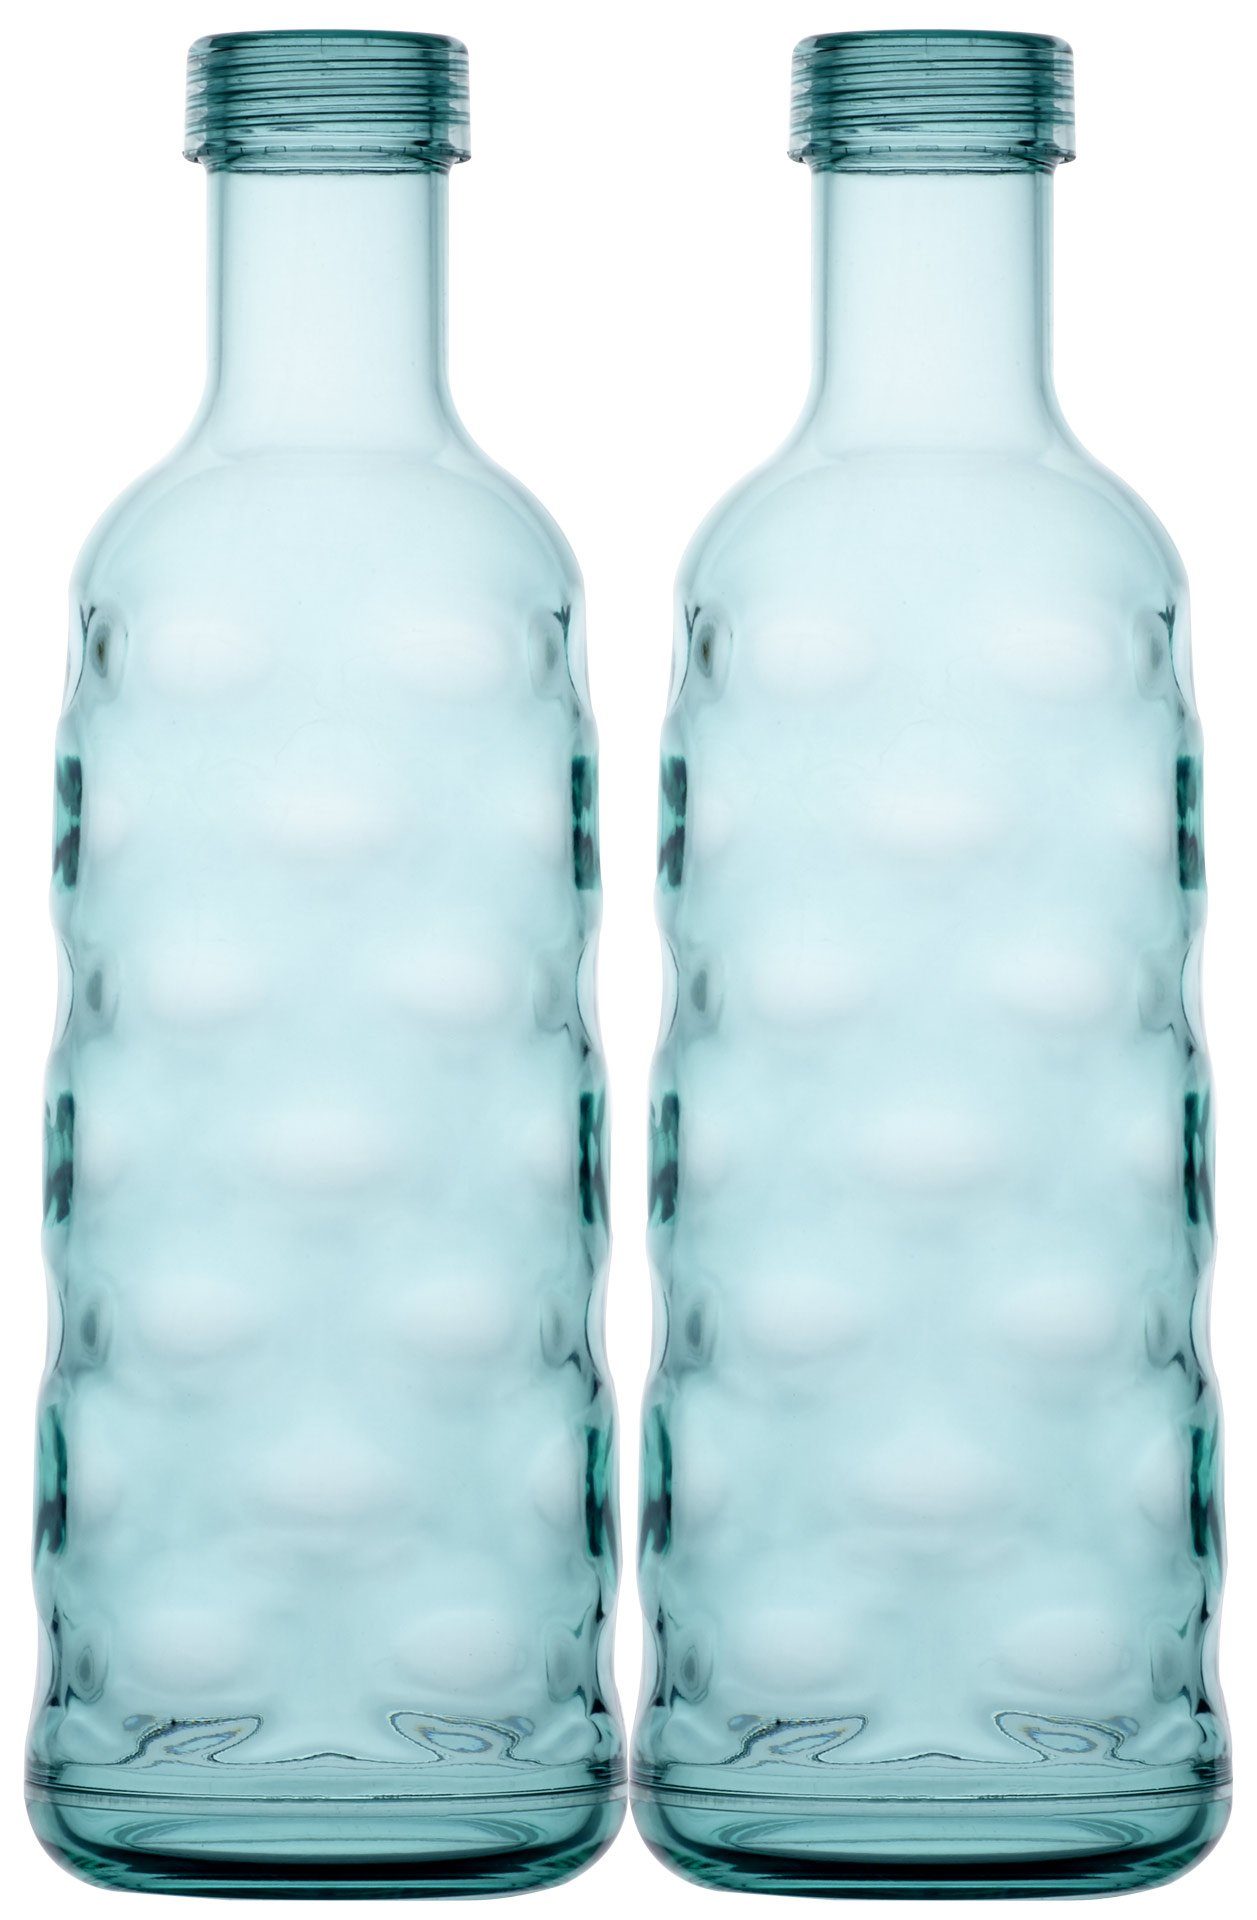 Marine Business Trinkflasche Zwei Flaschen, Moon-Acqua, Geschirr Harmony